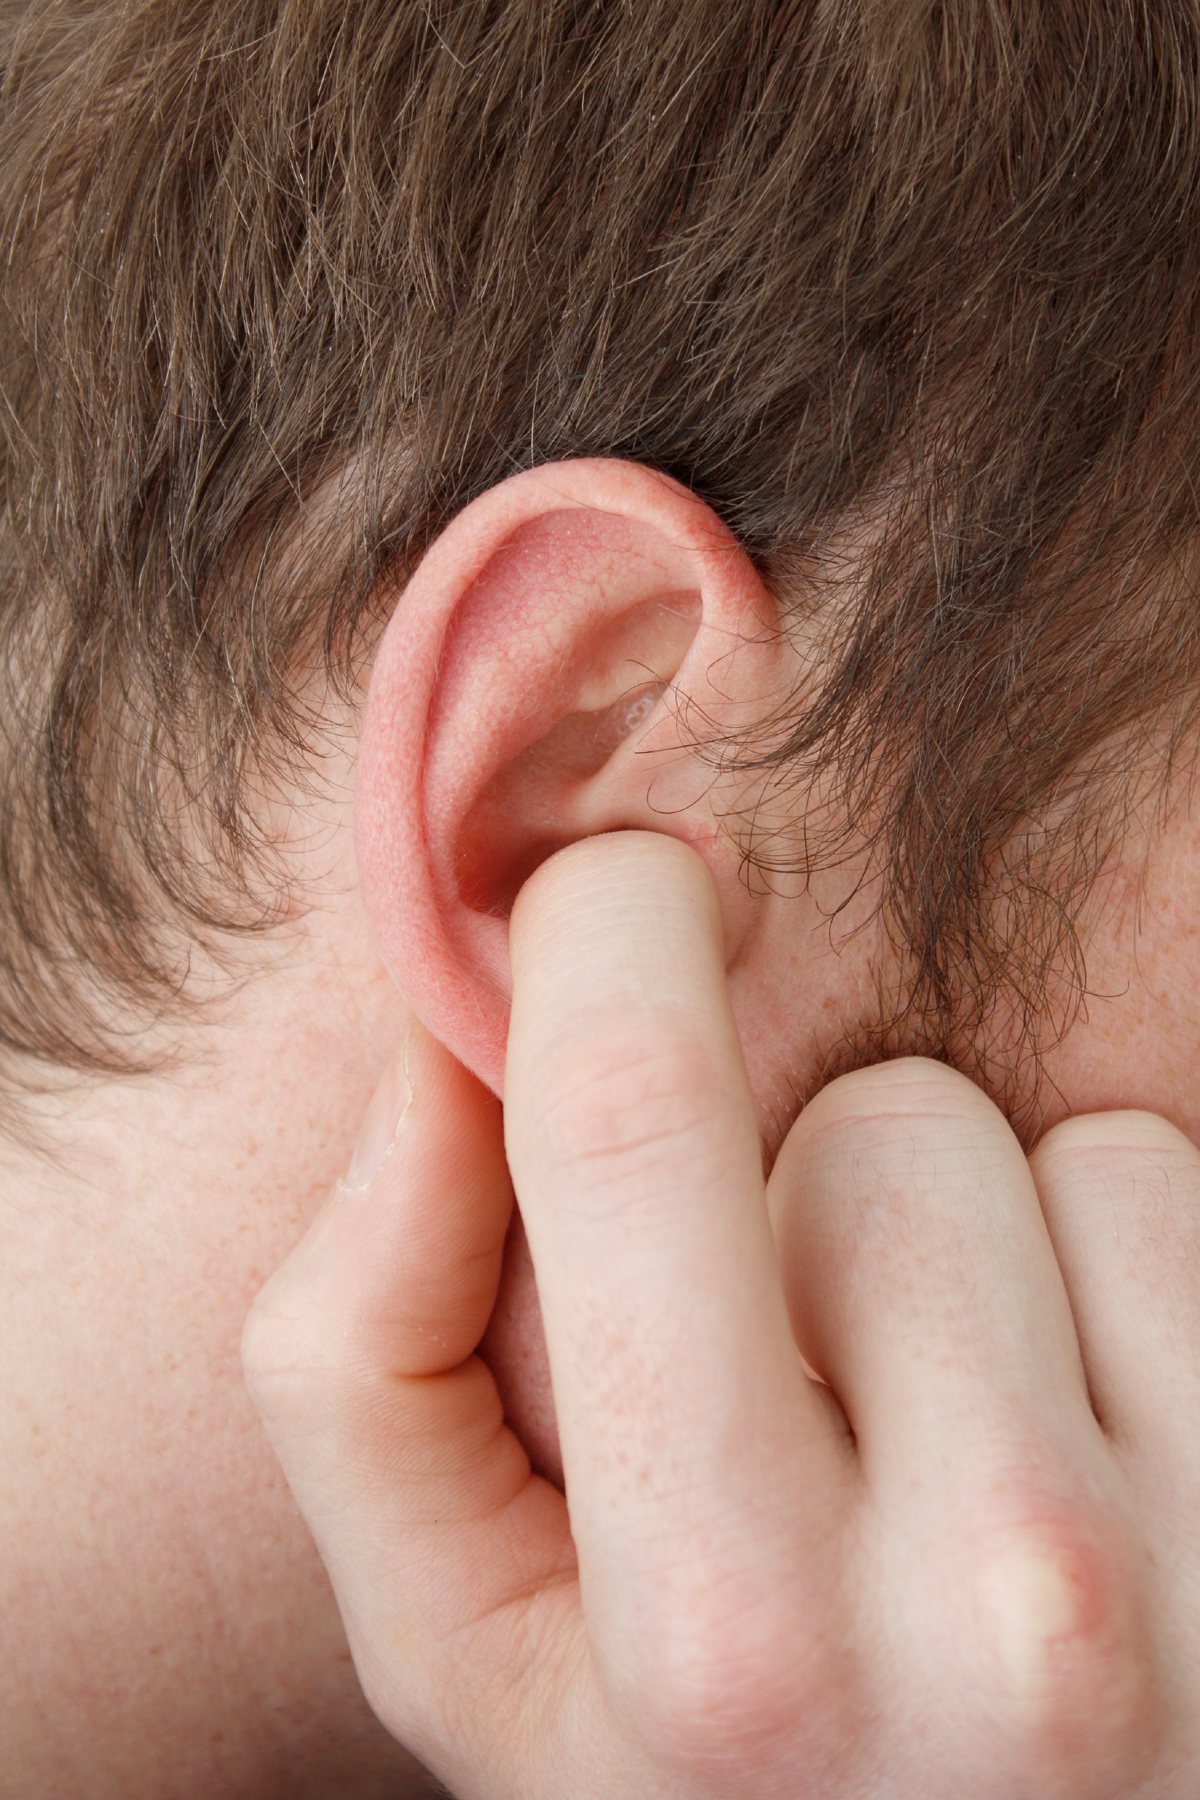 研究顯示，噪音給人耳朵的傷害可能比想像中大。